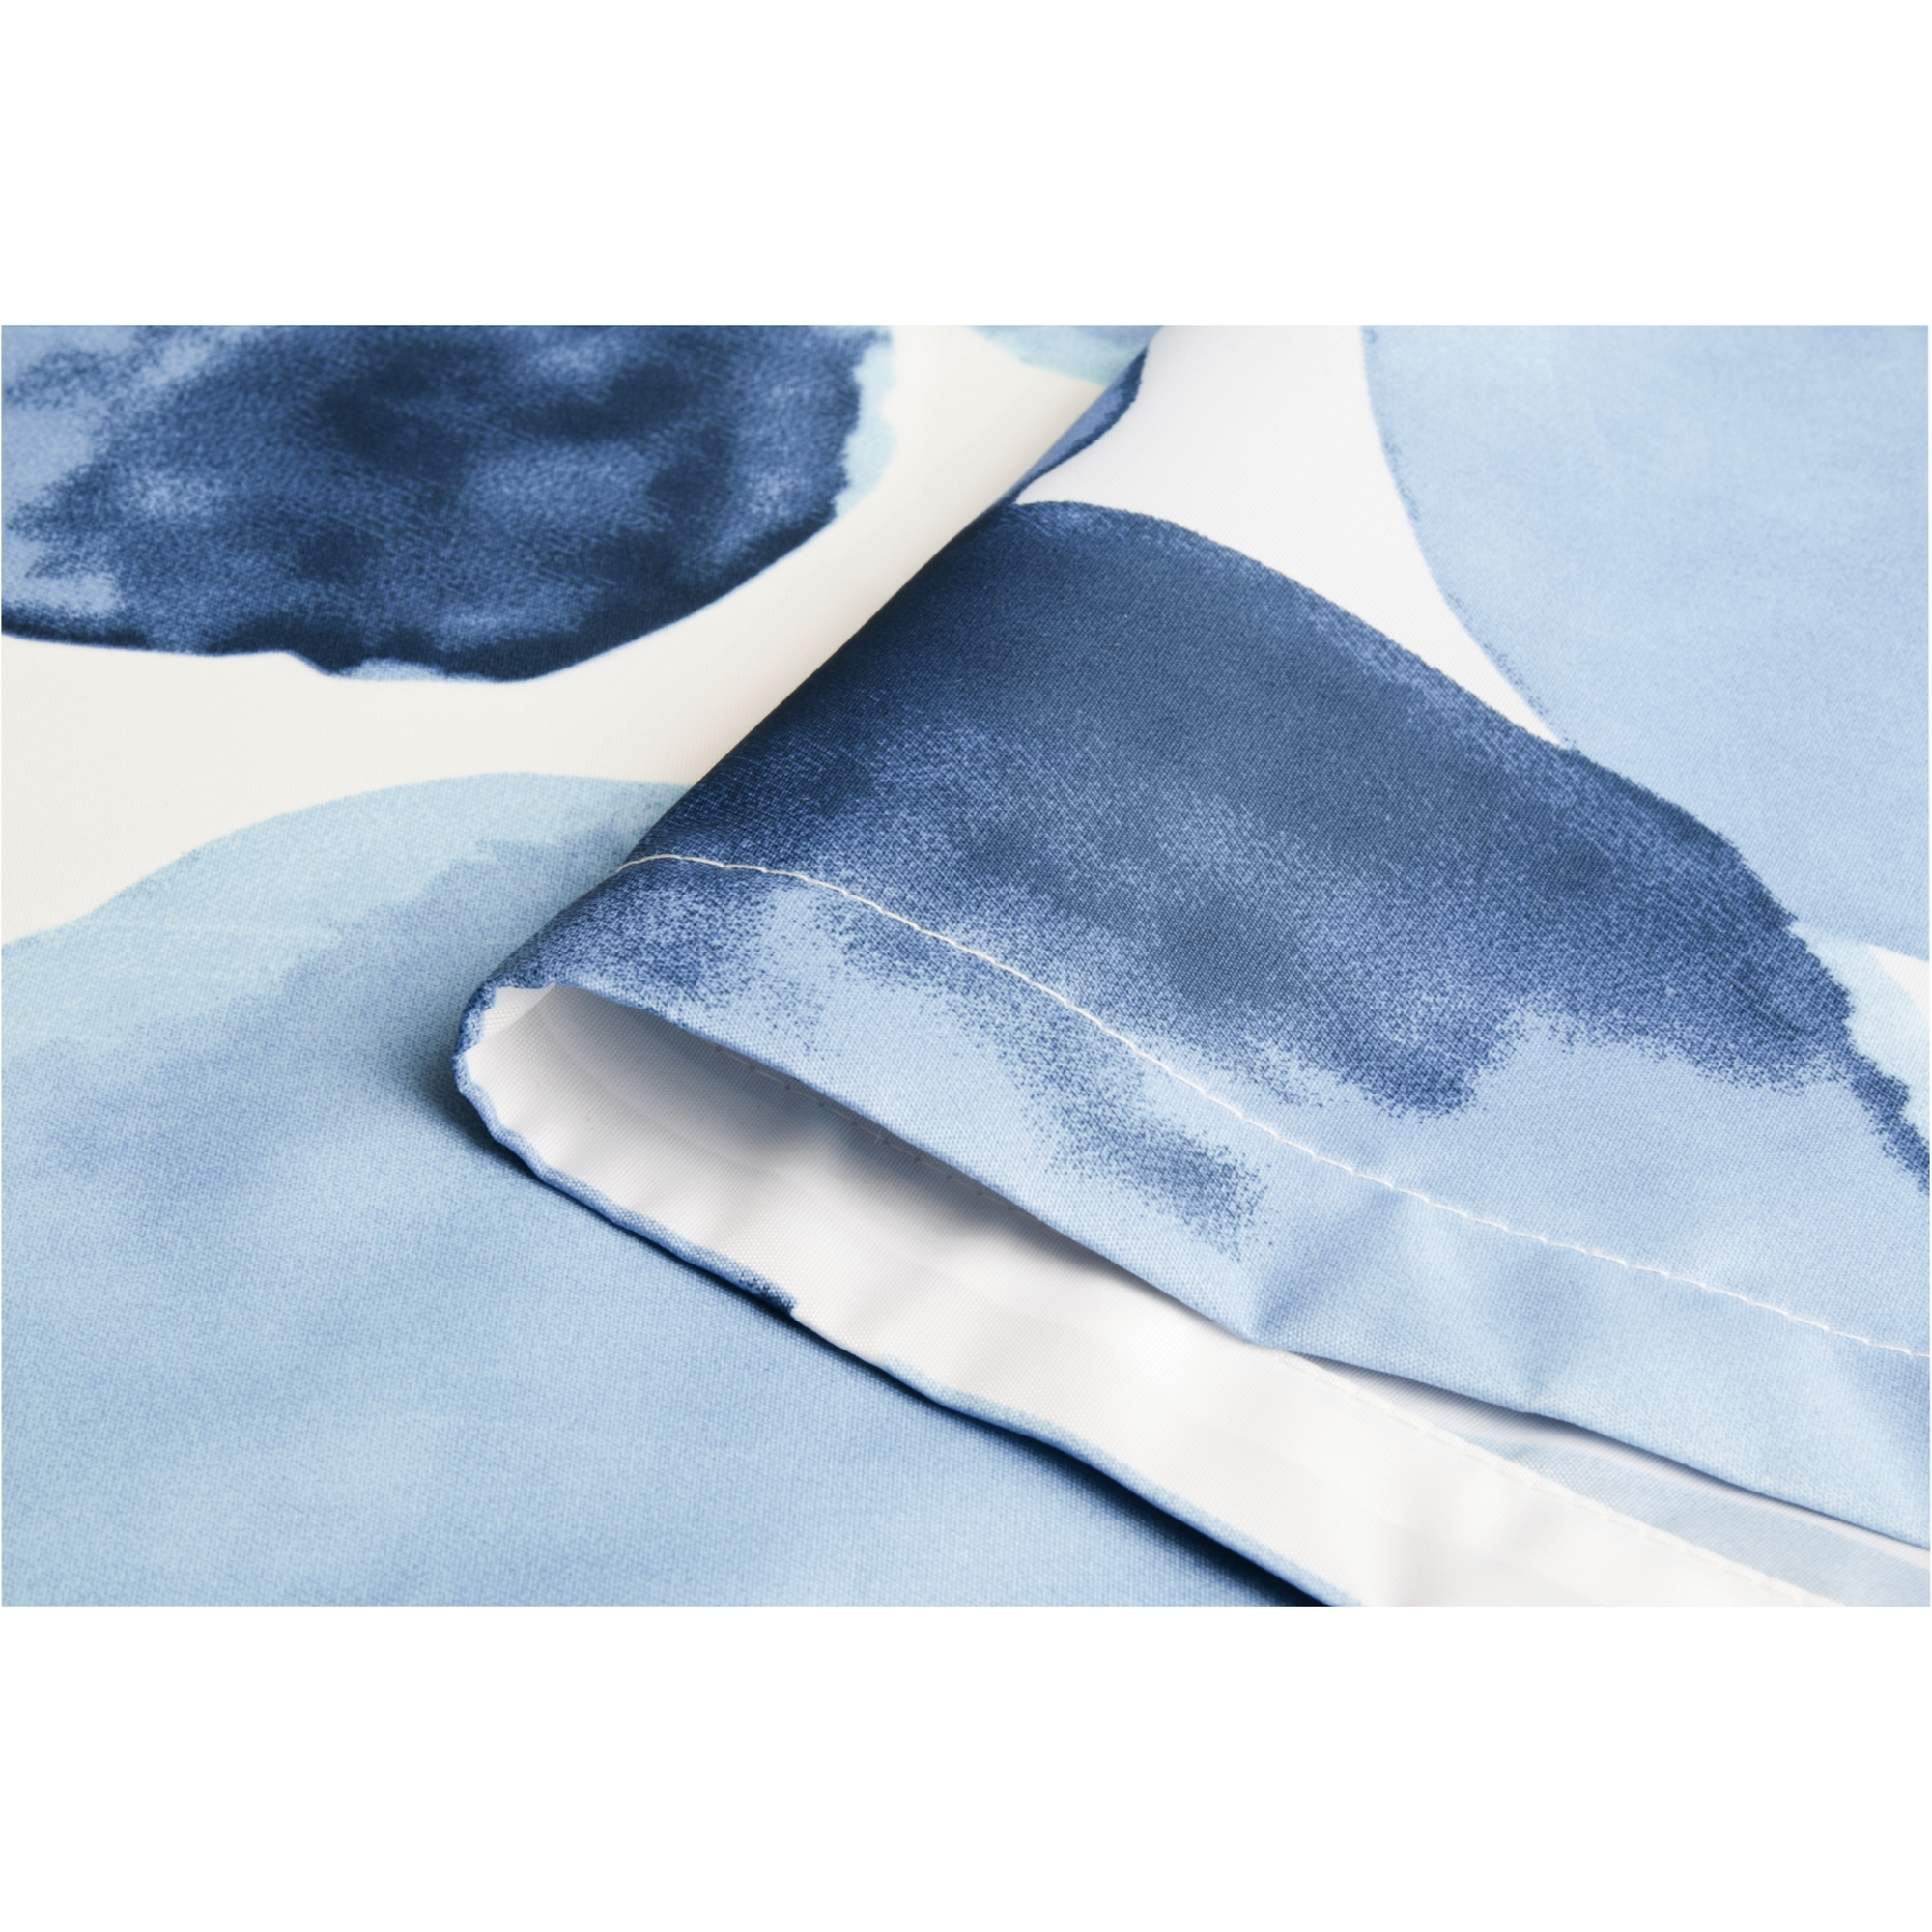 Duschvorhang 'Tupfen' Textil blau 180 x 200 cm + product picture